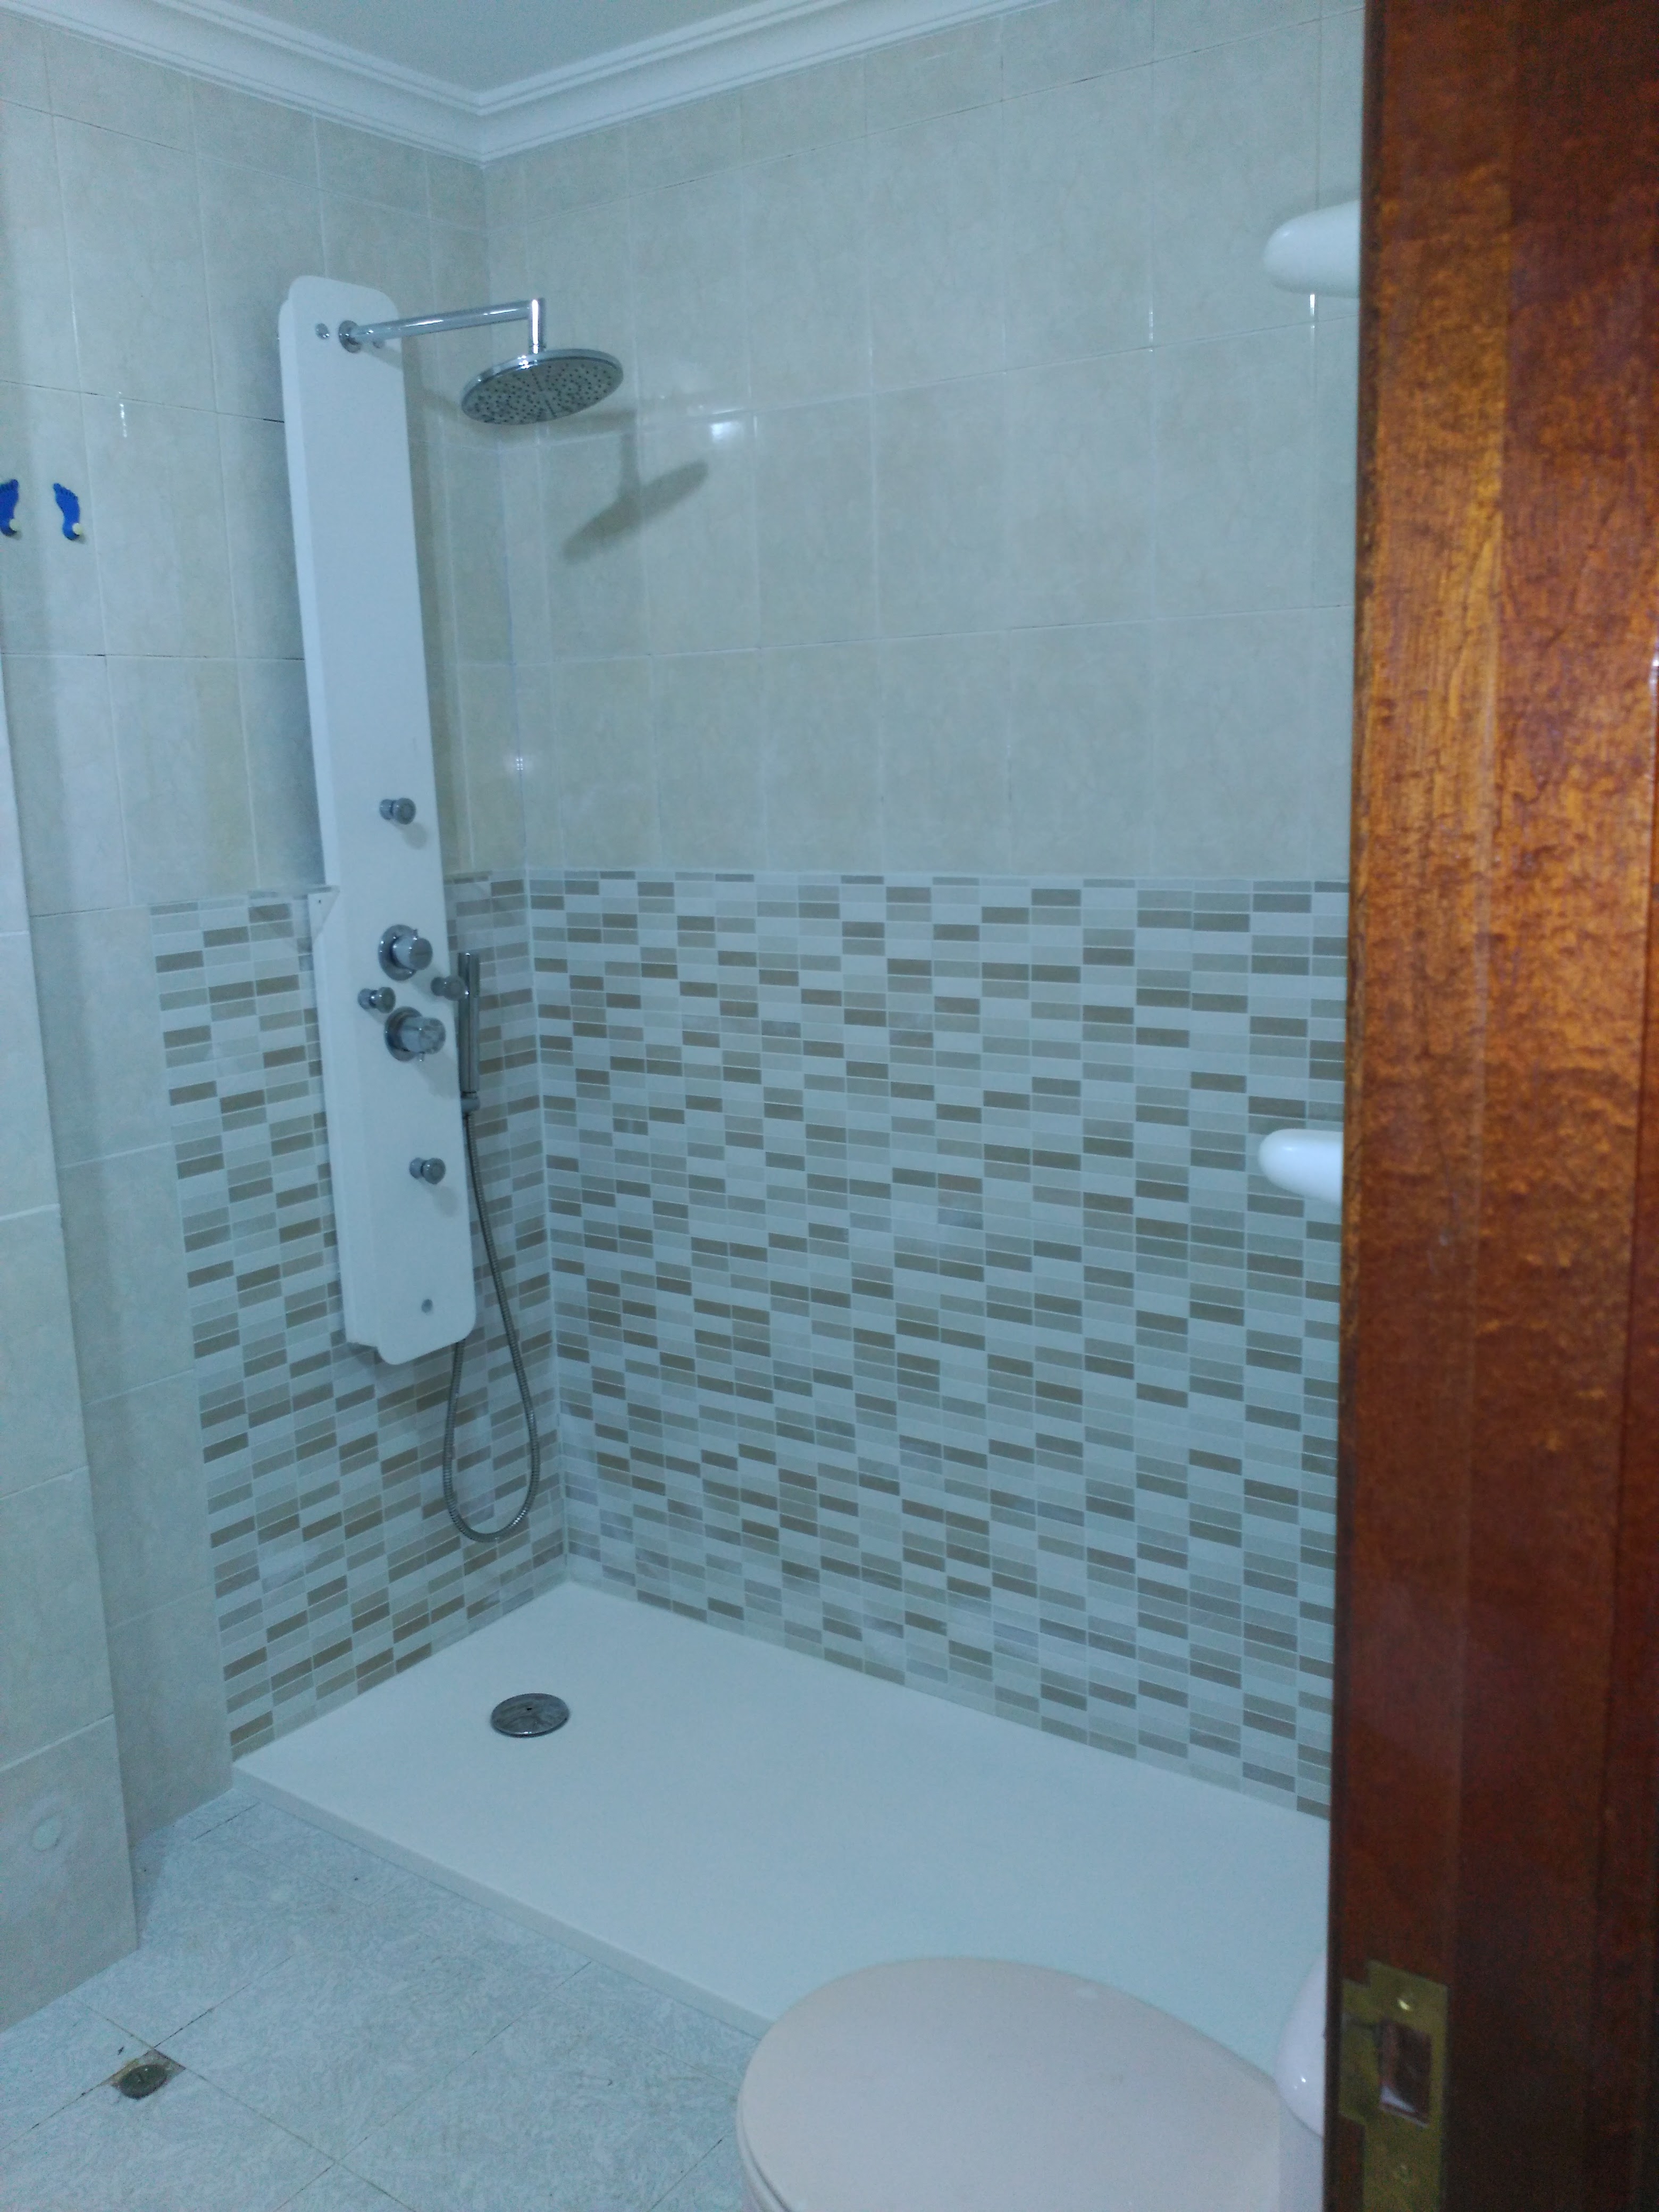 Oferta cambio bañera por ducha en Pontevedra | Construper